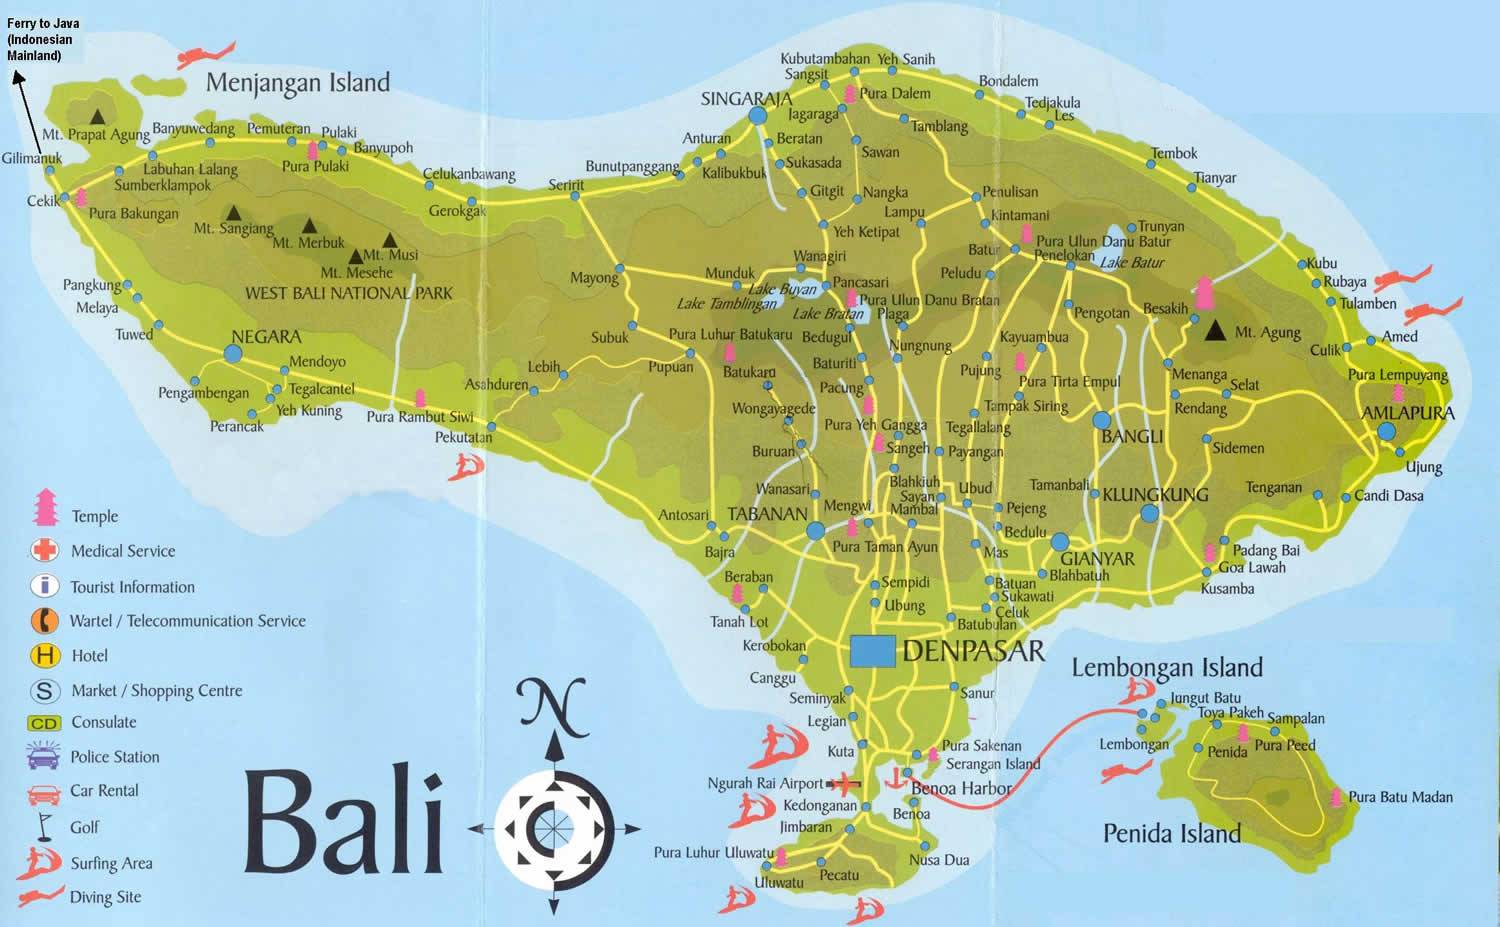 bali tourism plan